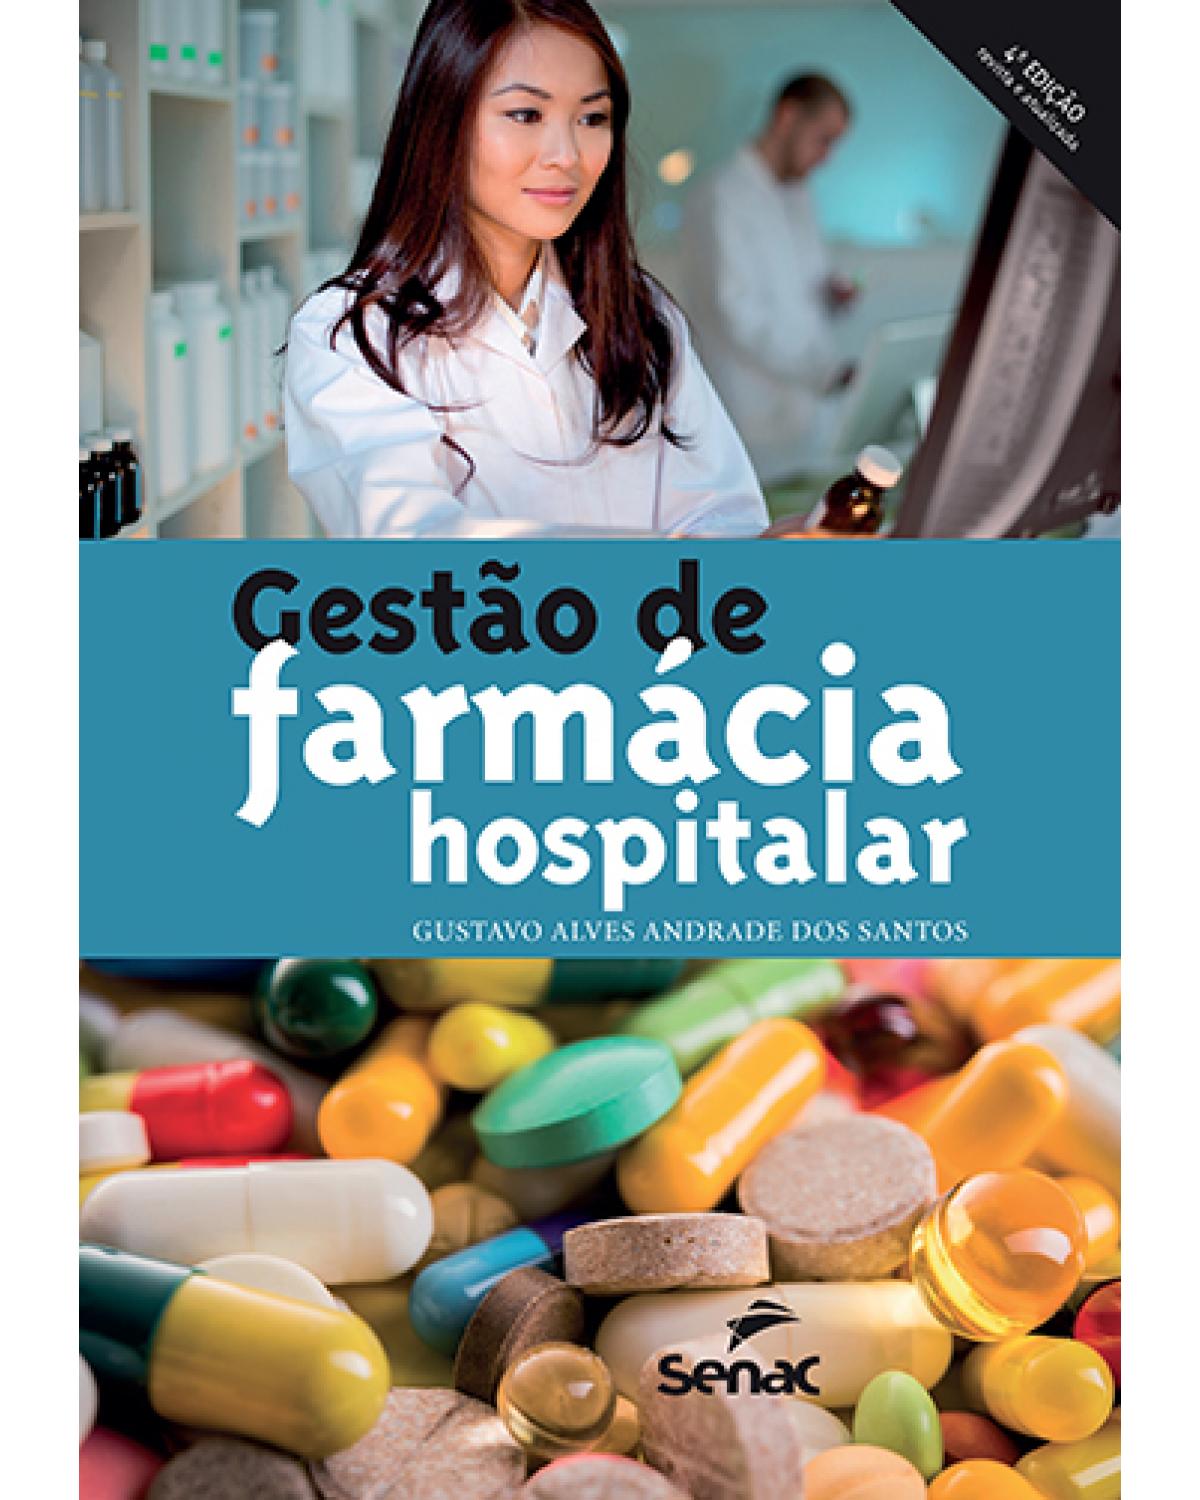 Gestão de farmácia hospitalar - 5ª Edição